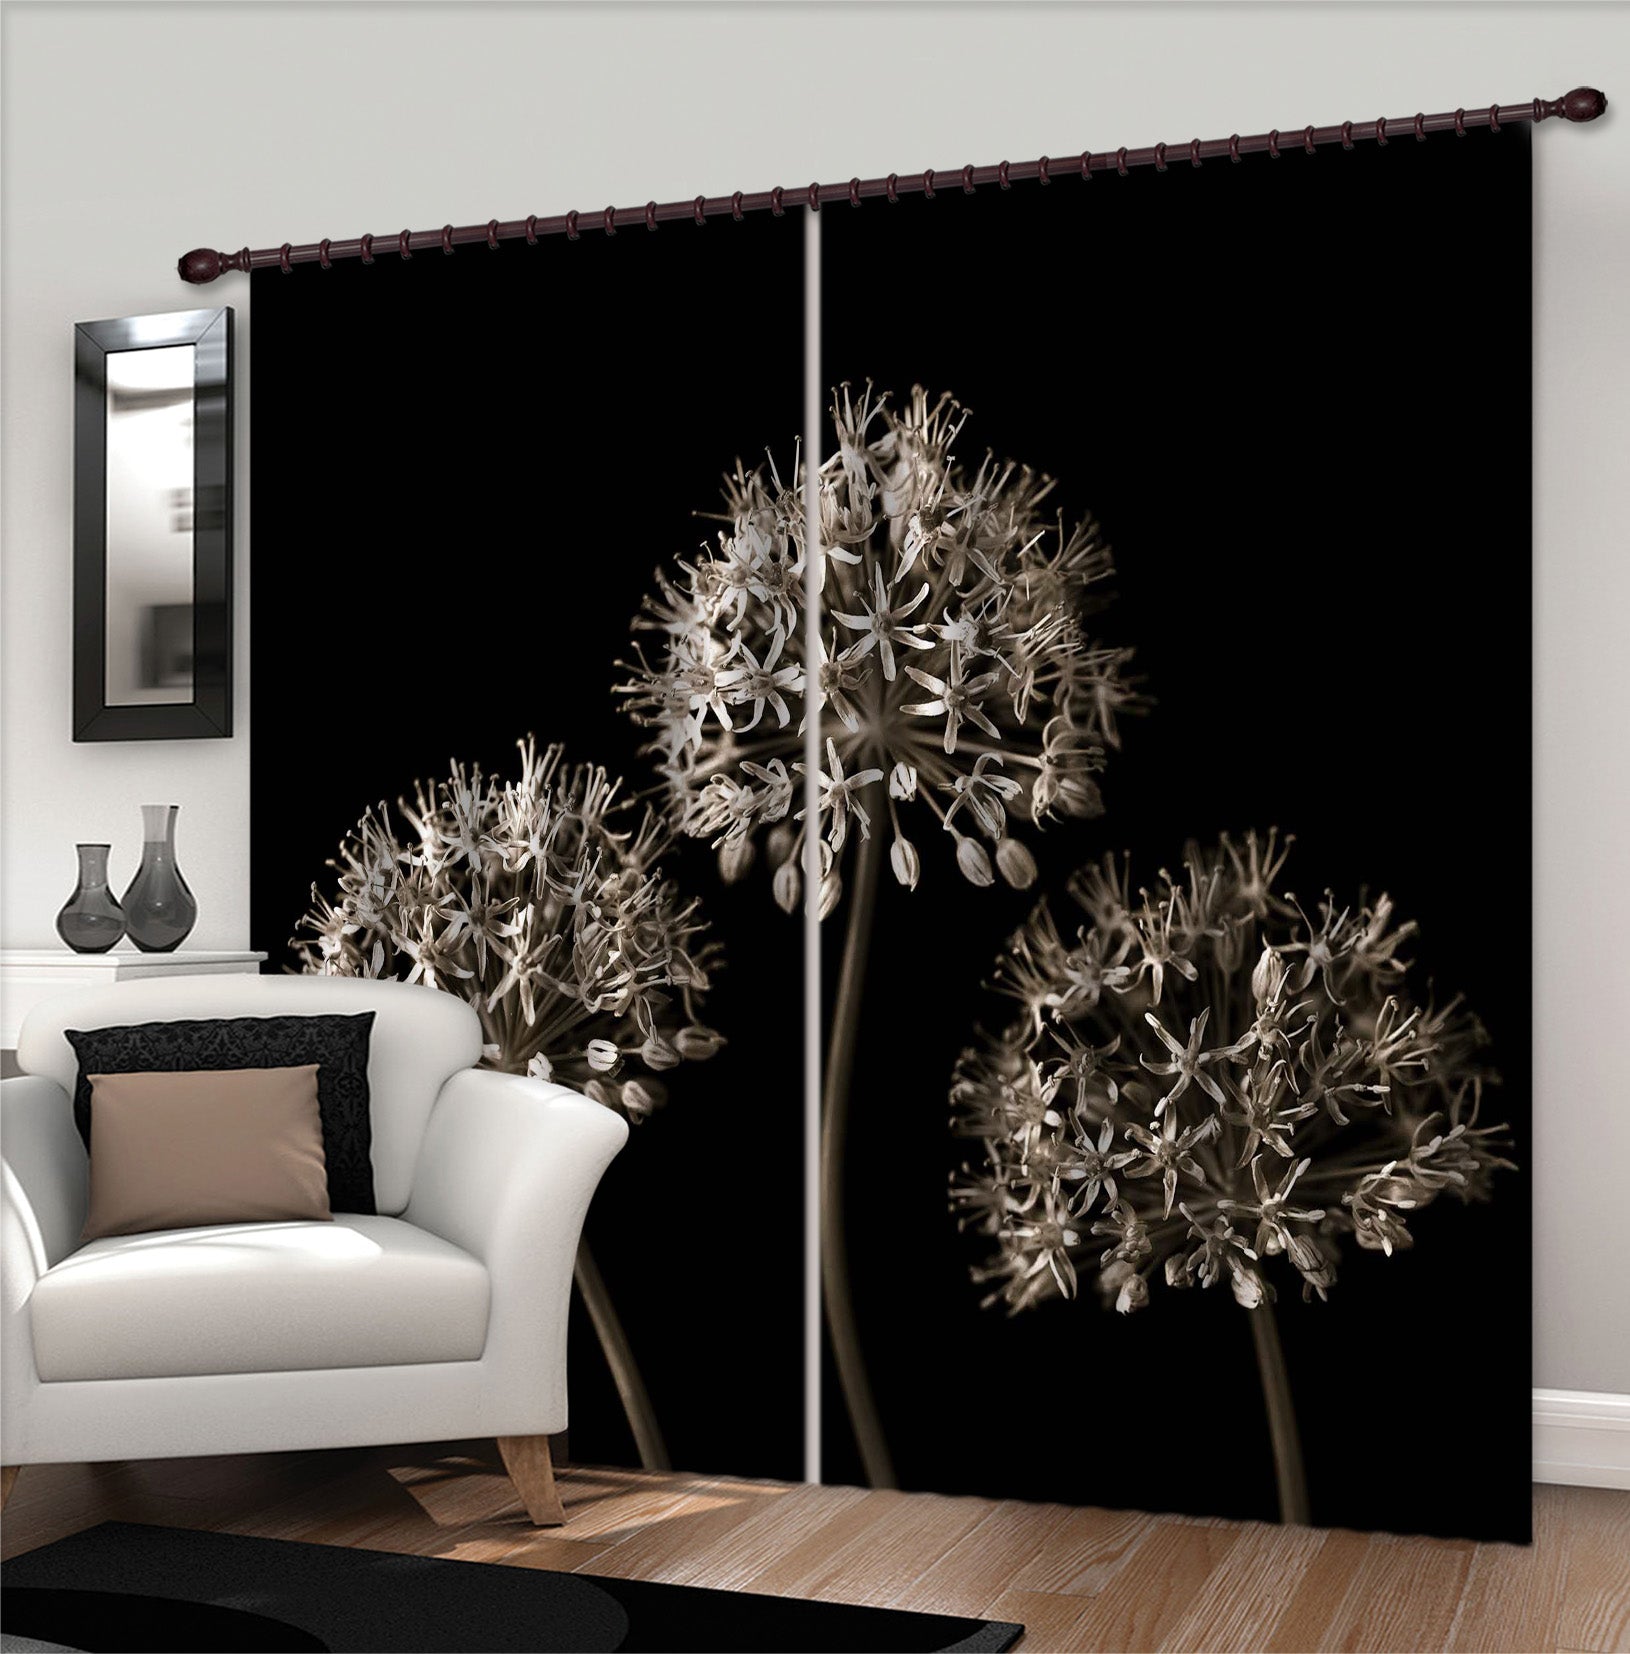 3D Dandelion 6303 Assaf Frank Curtain Curtains Drapes